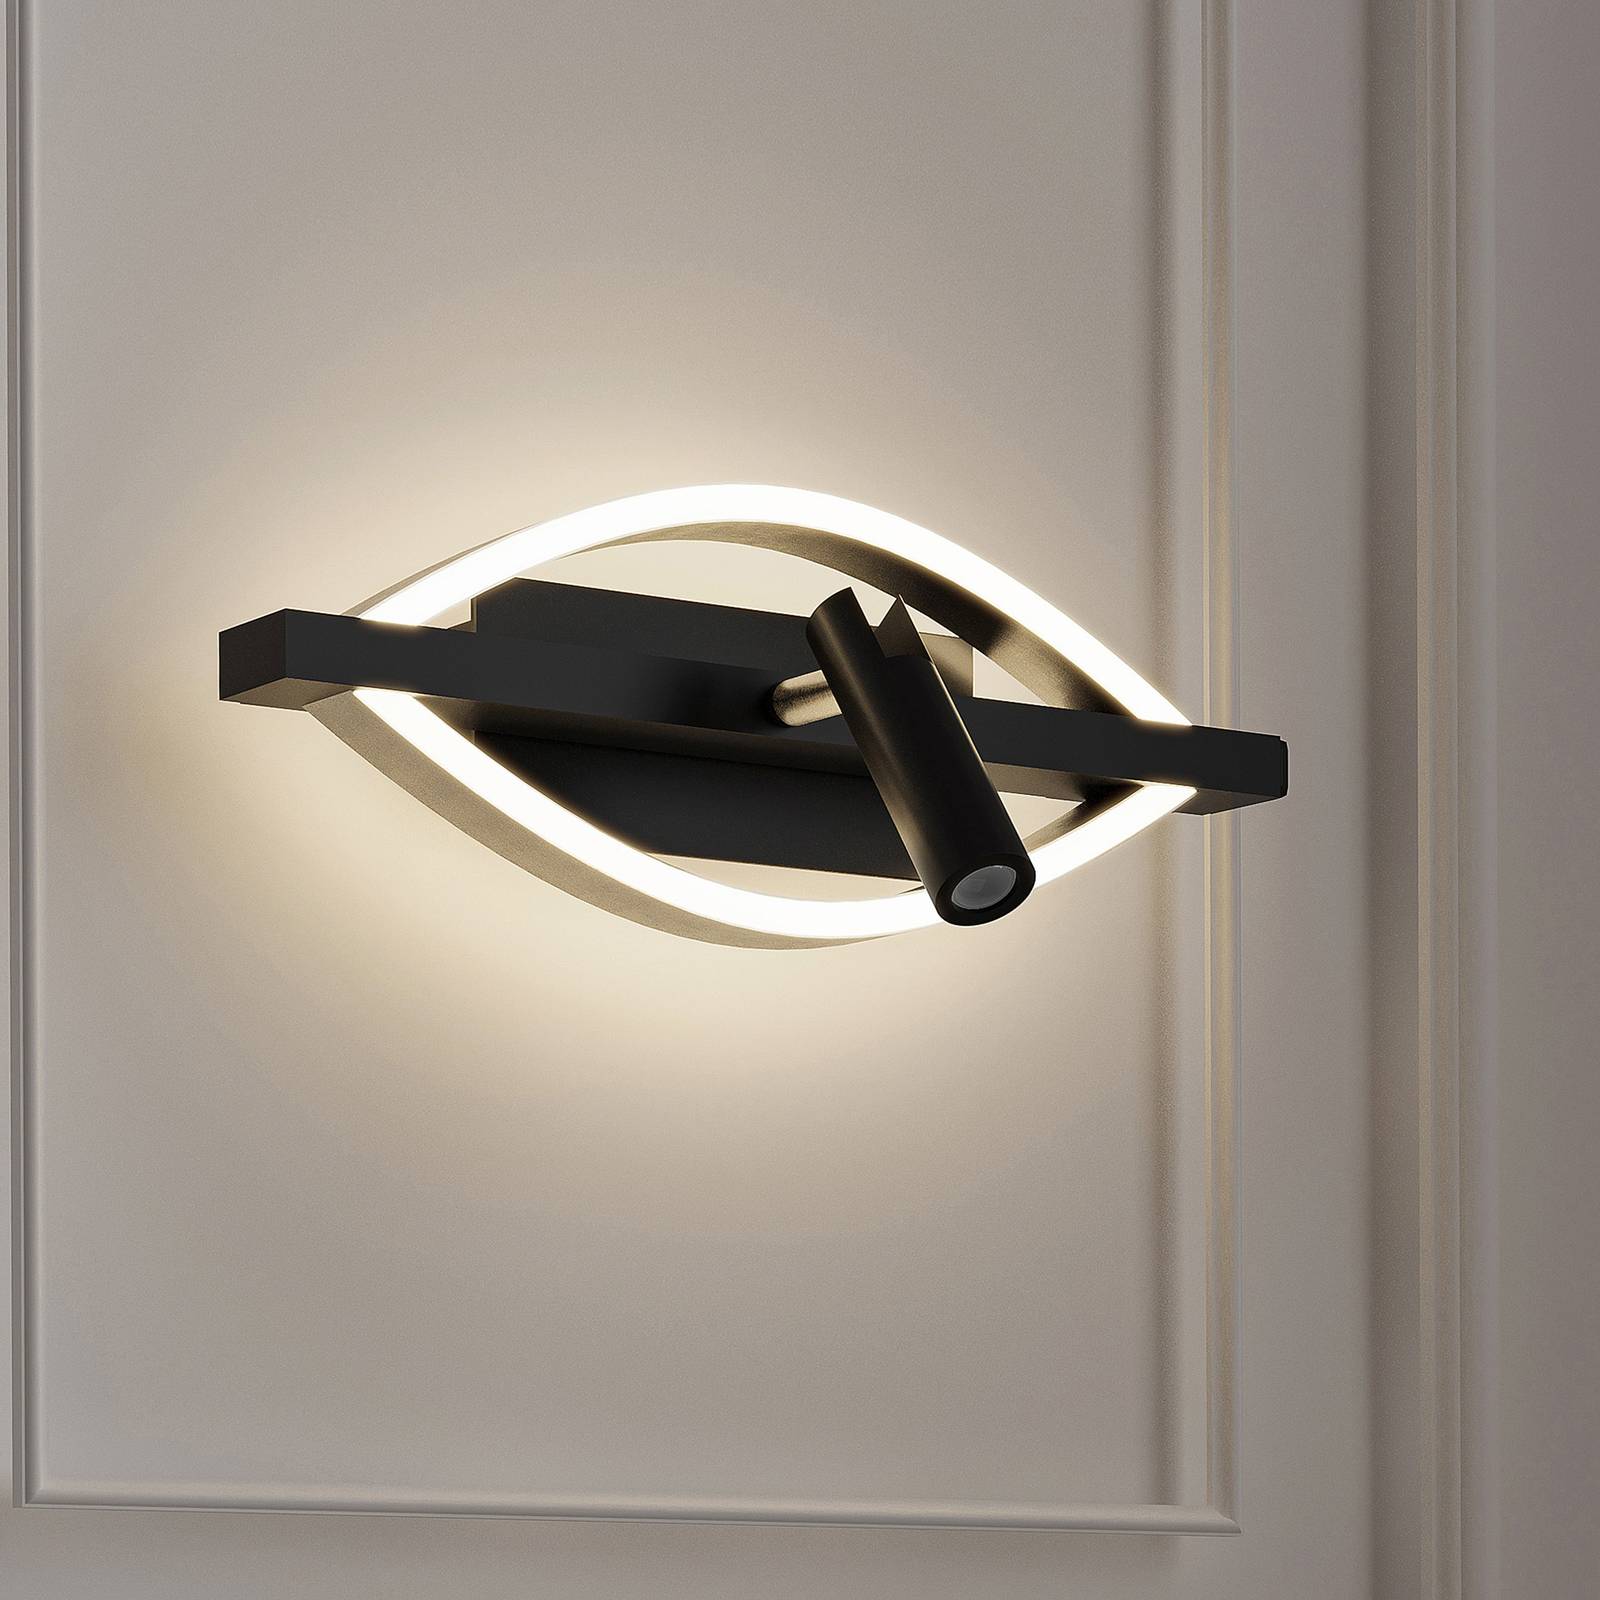 Lucande Lucande Matwei LED nástěnné světlo, ovál, nikl